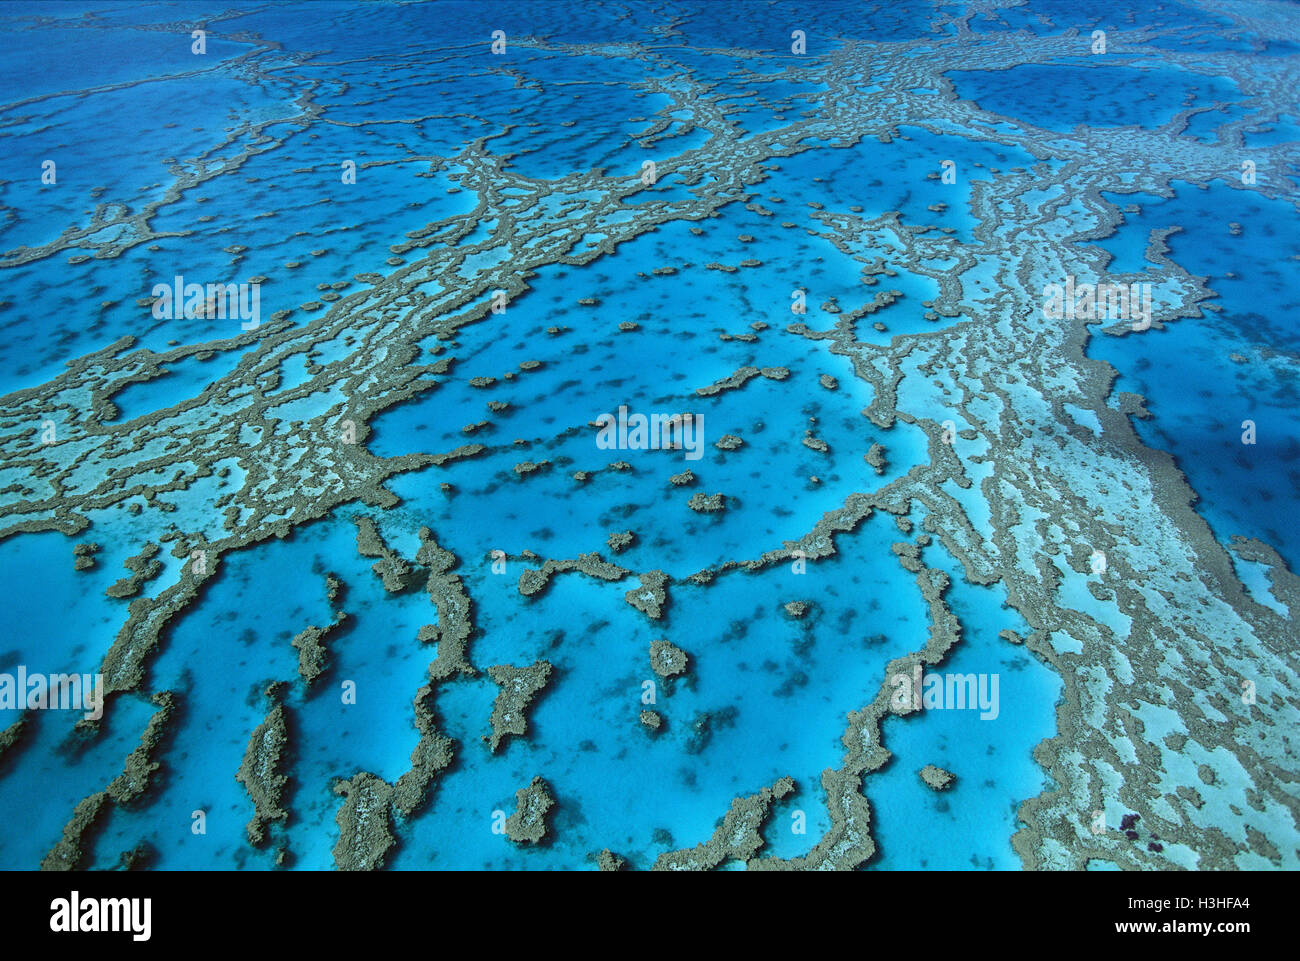 Hardy reef formazioni coralline, Foto Stock